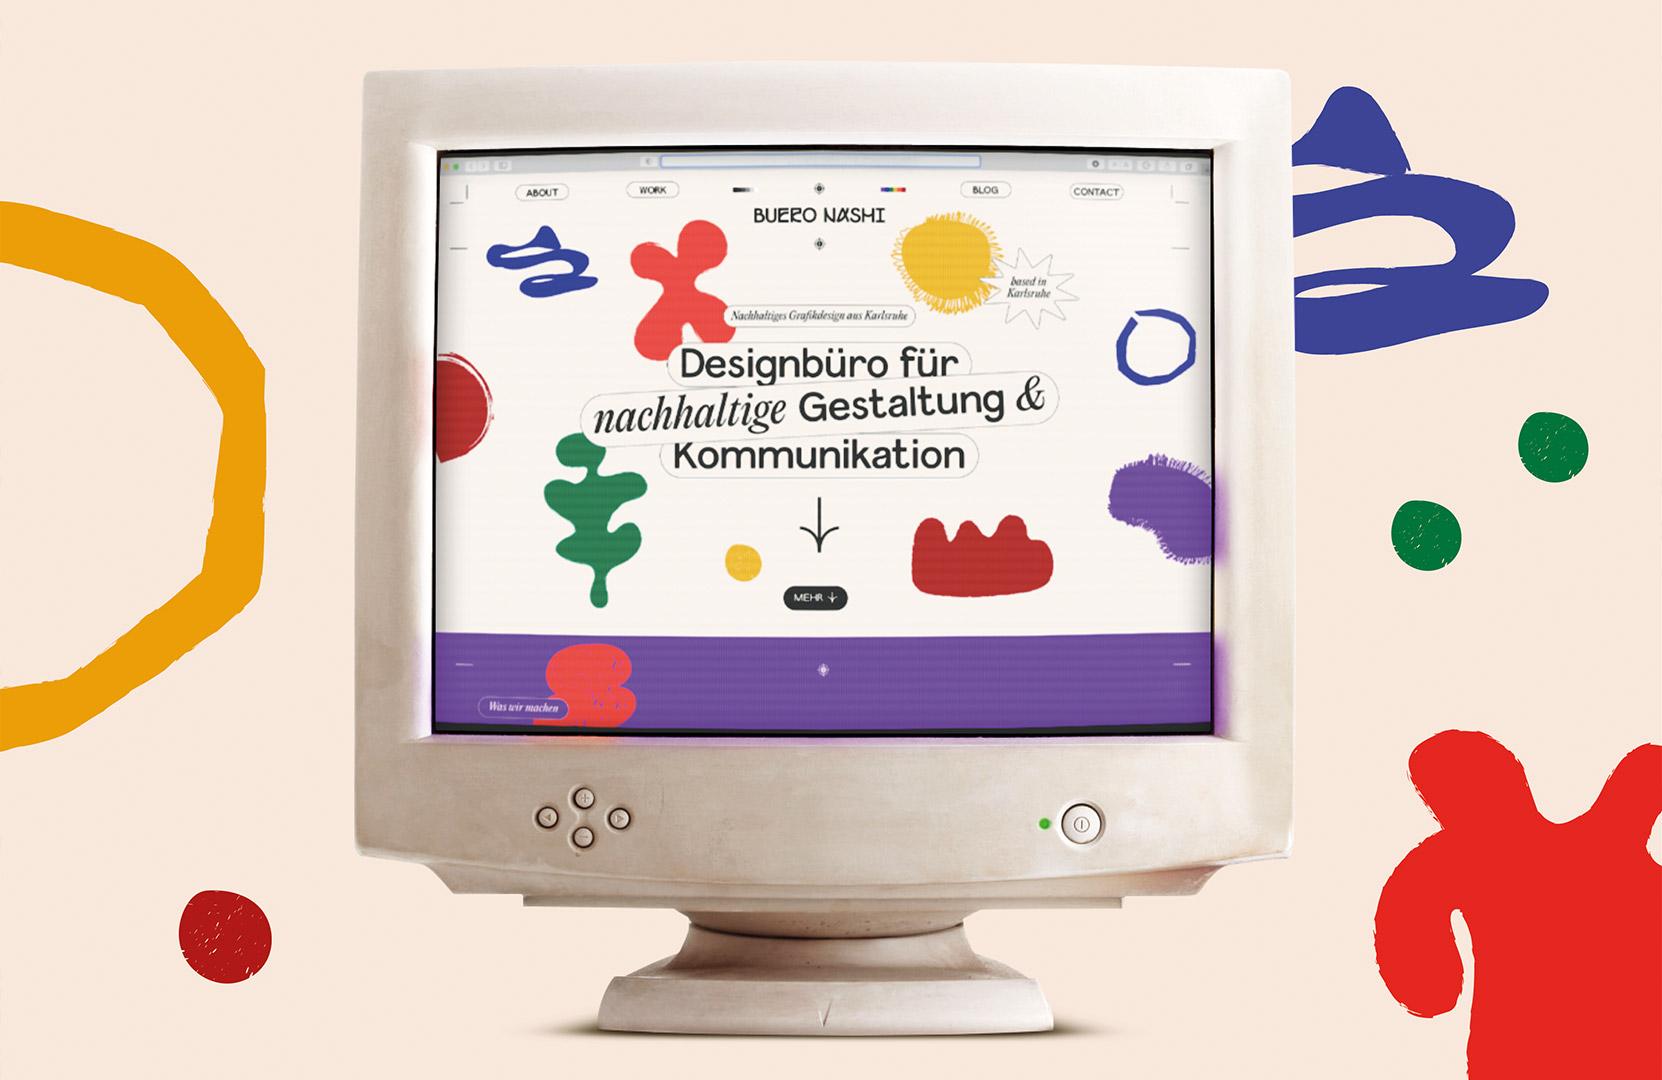 Dies ist ein Bild von einem Computer-Bildschirm auf dem die Landingpage des Designbüros BUERO NASHI zu sehen ist. Die Gestaltung besteht auf bunten organischen Formen und der Schrift "Designbüro für nachhaltige Gestaltung & Kommunikation"